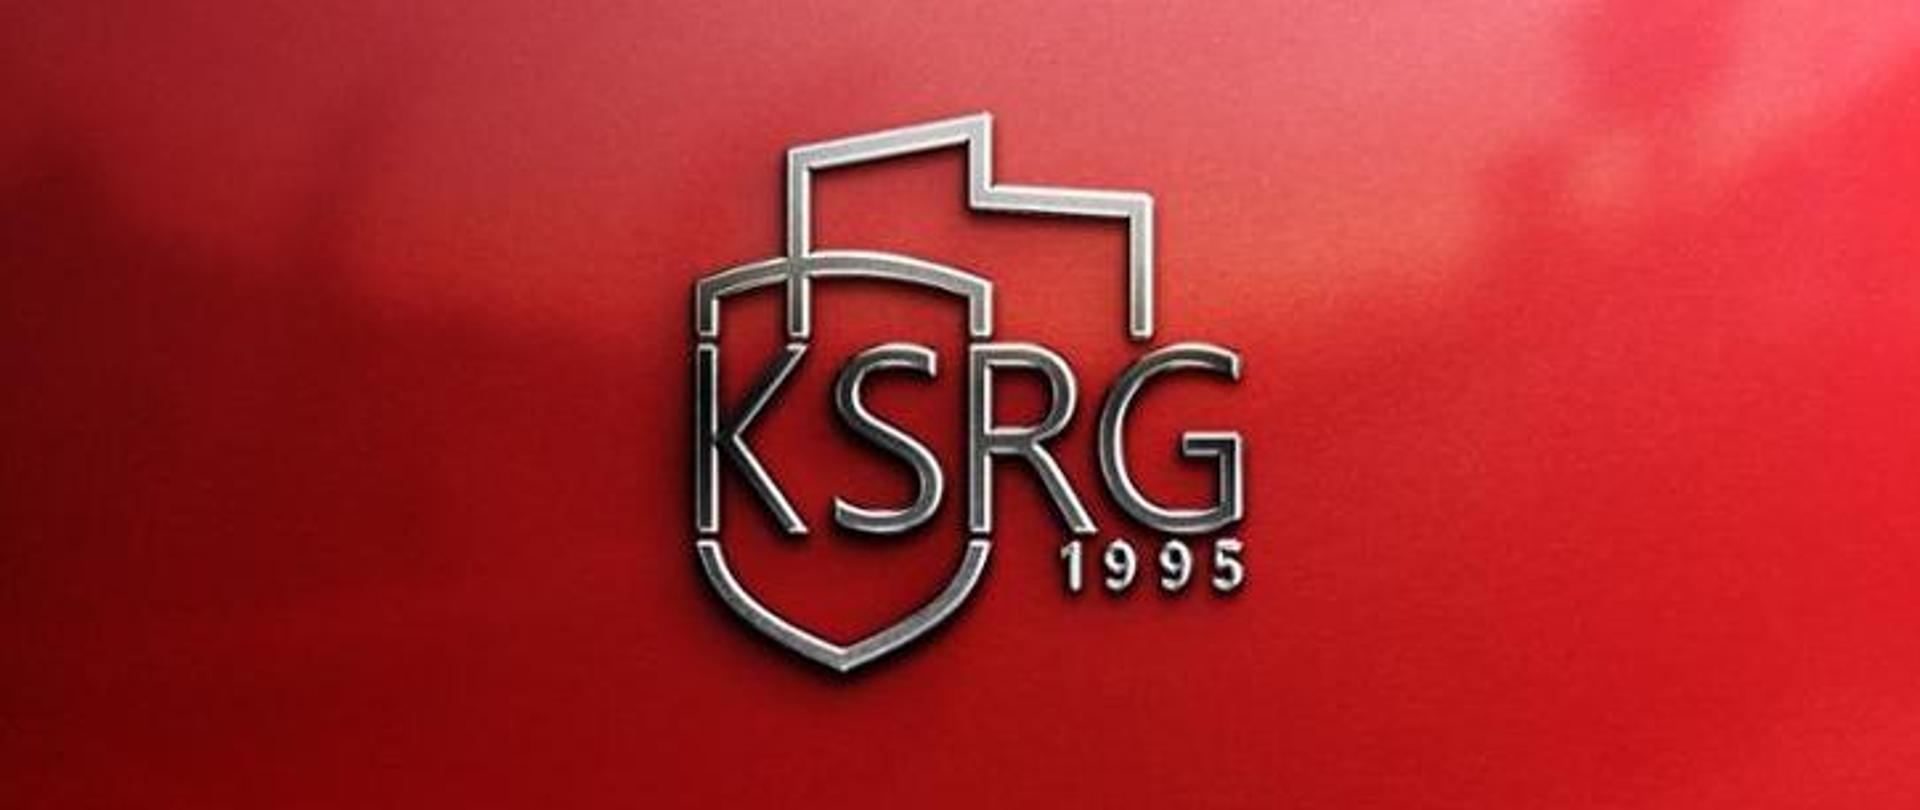 Wprowadzenie do stosowania logo krajowego systemu ratowniczo - gaśniczego. Na czerwonym tle srebrny napis KSRG 1995